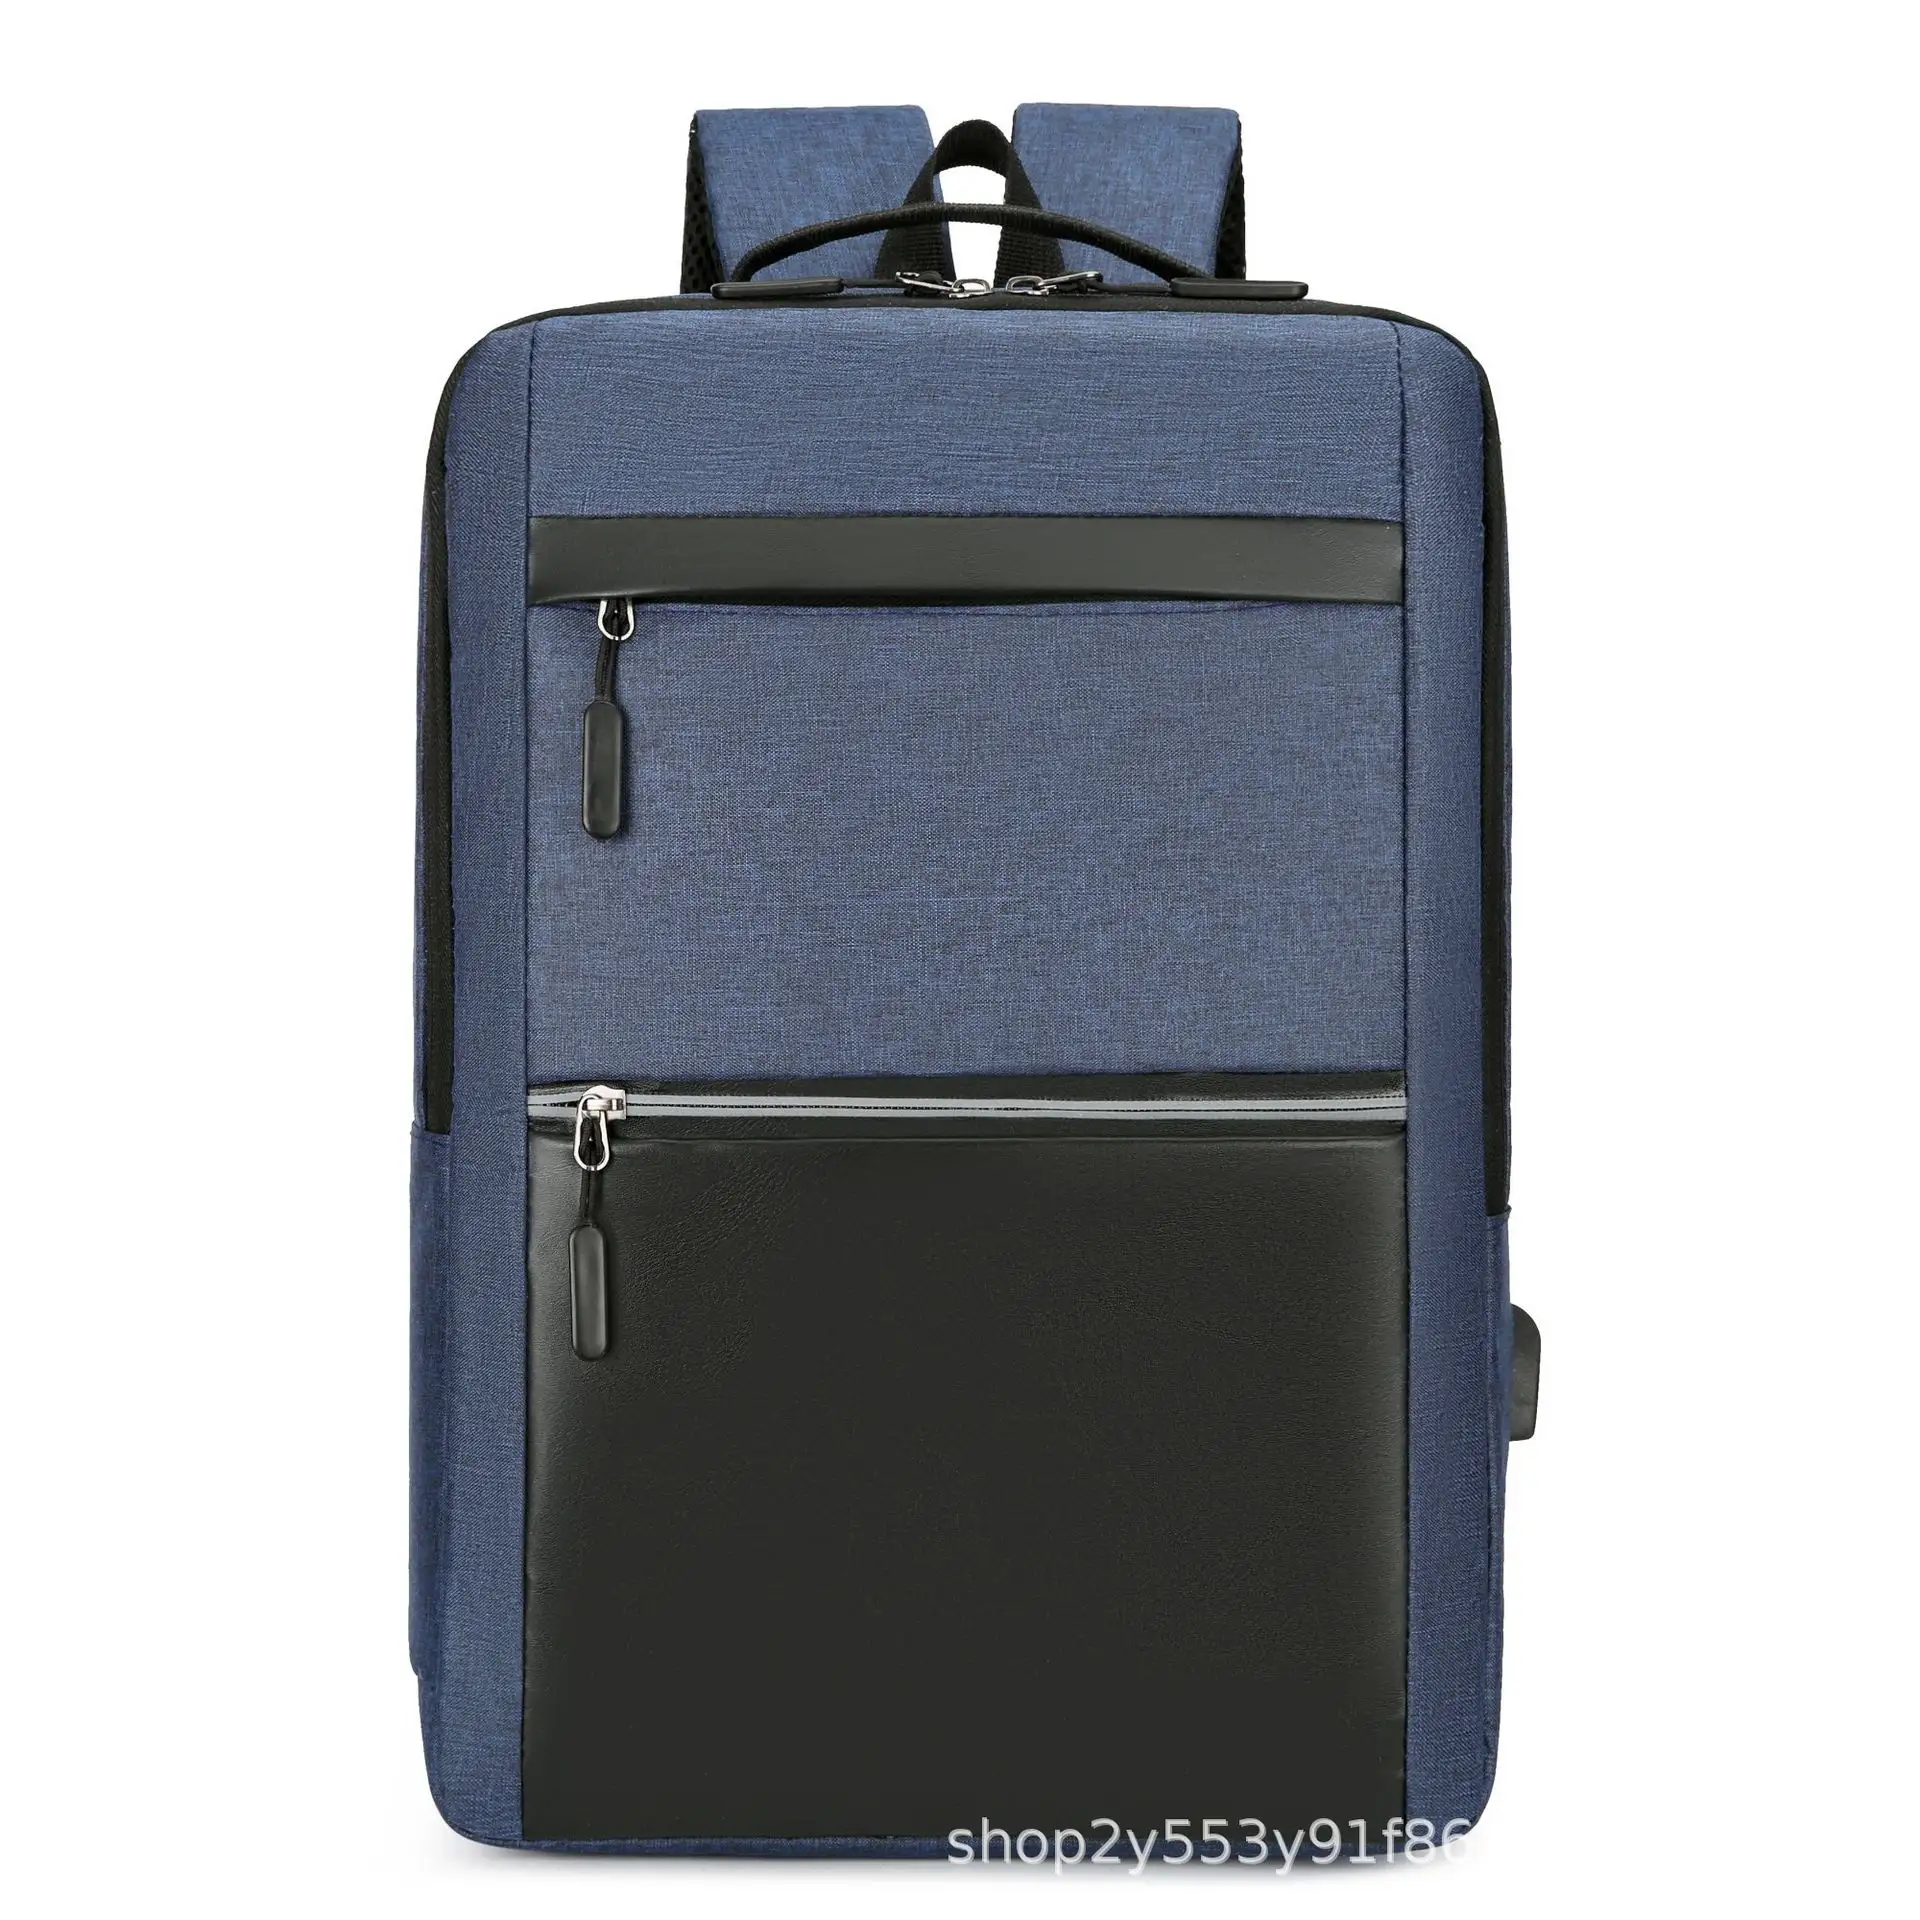 Toptan su geçirmez dizüstü iş erkekler için seyahat sırt çantası moda seyahat omuz çantası sırt çantası